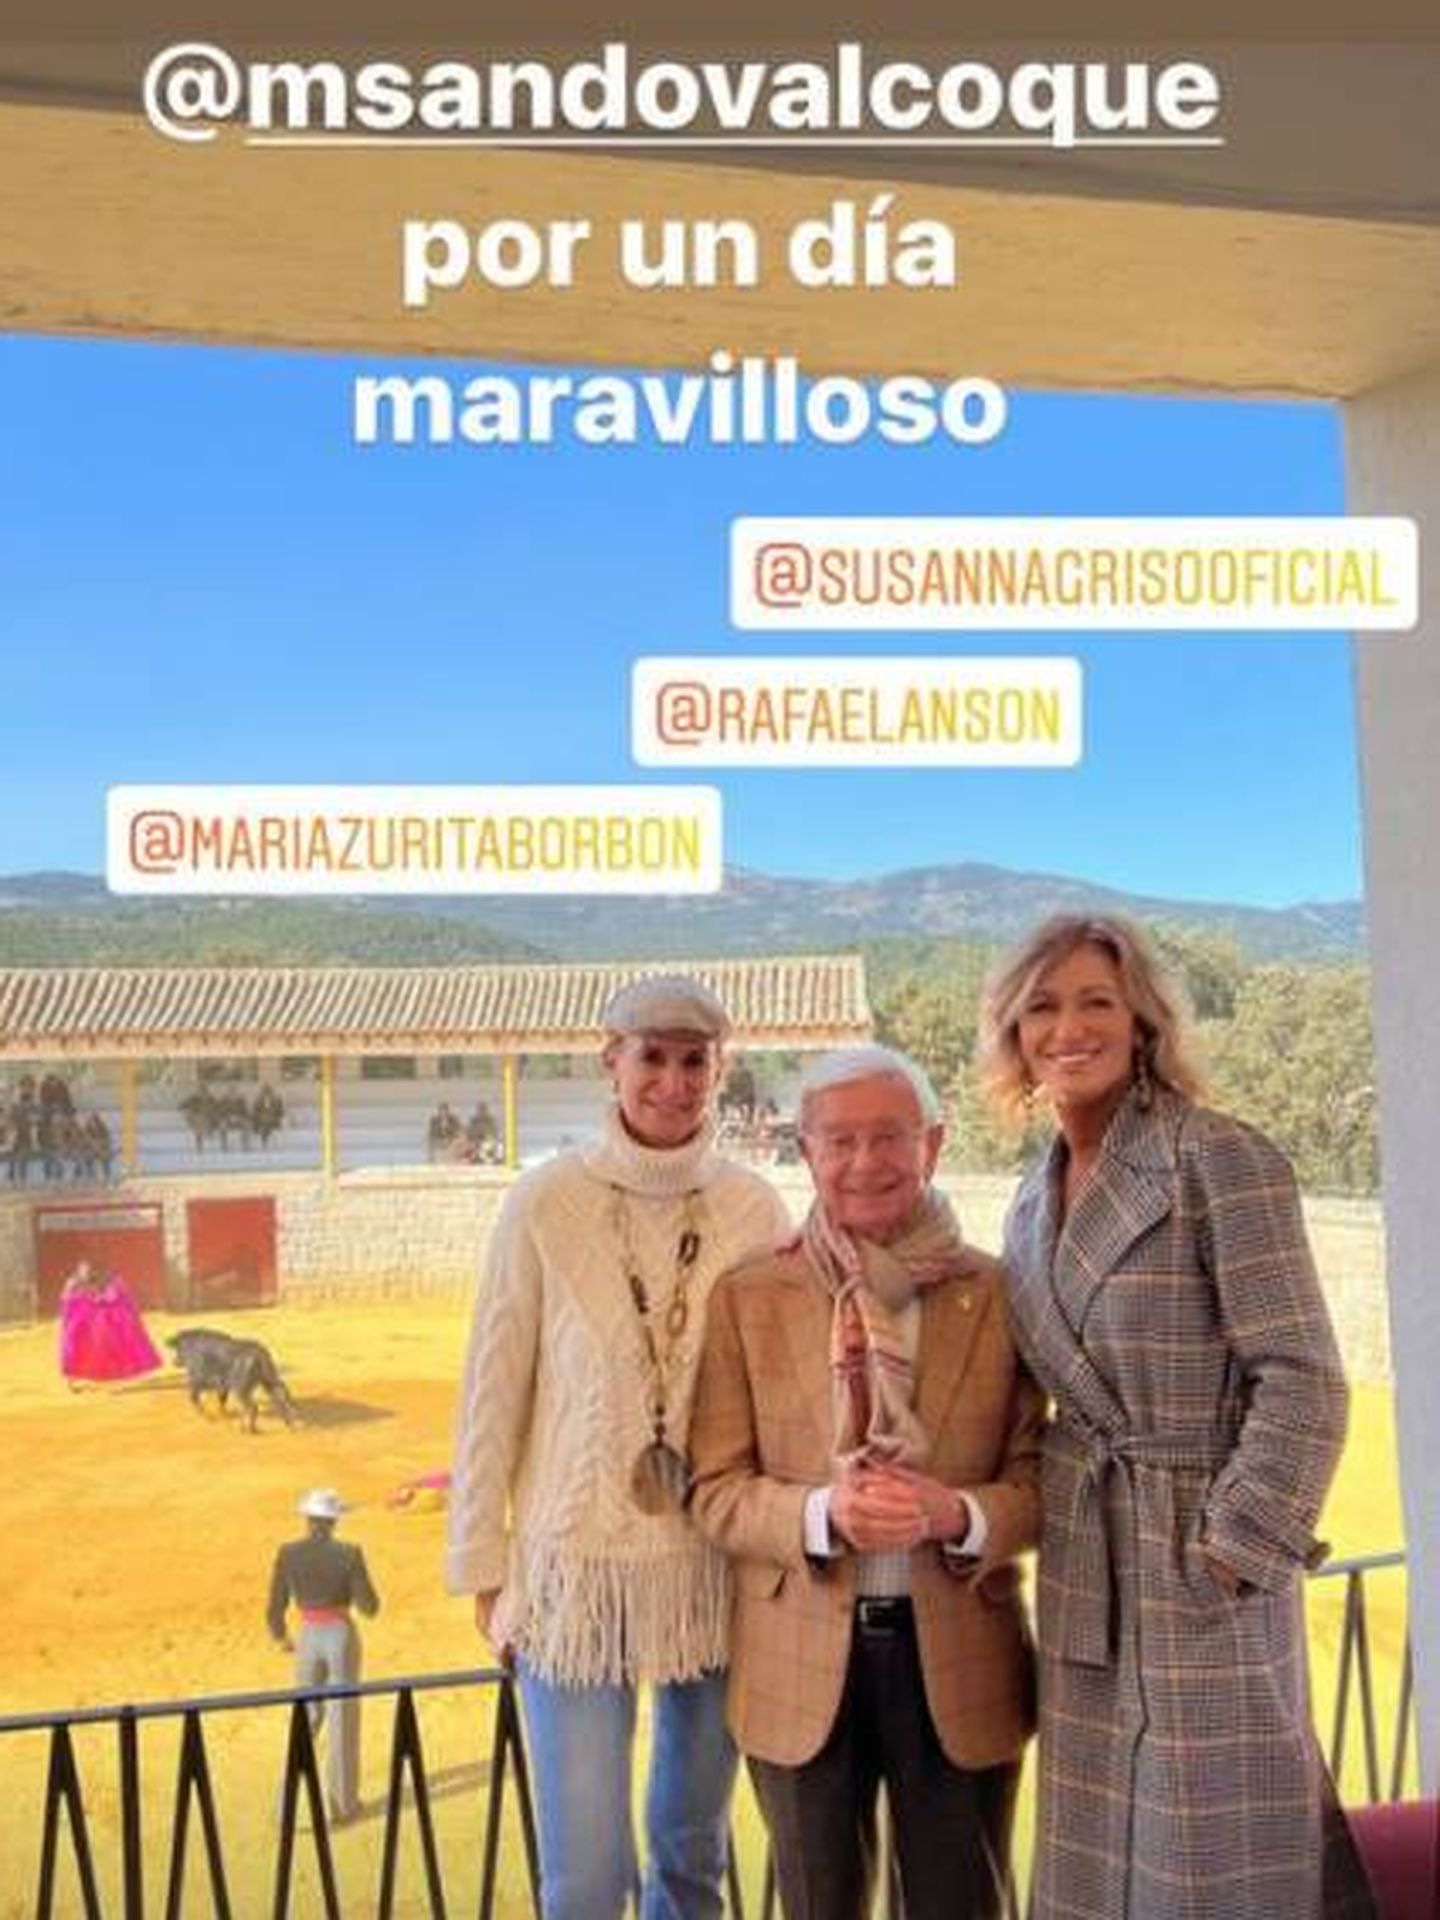 Algunos de los invitados a la fiesta de Mario Sandoval. (Instagram @mariazuritaborbon)